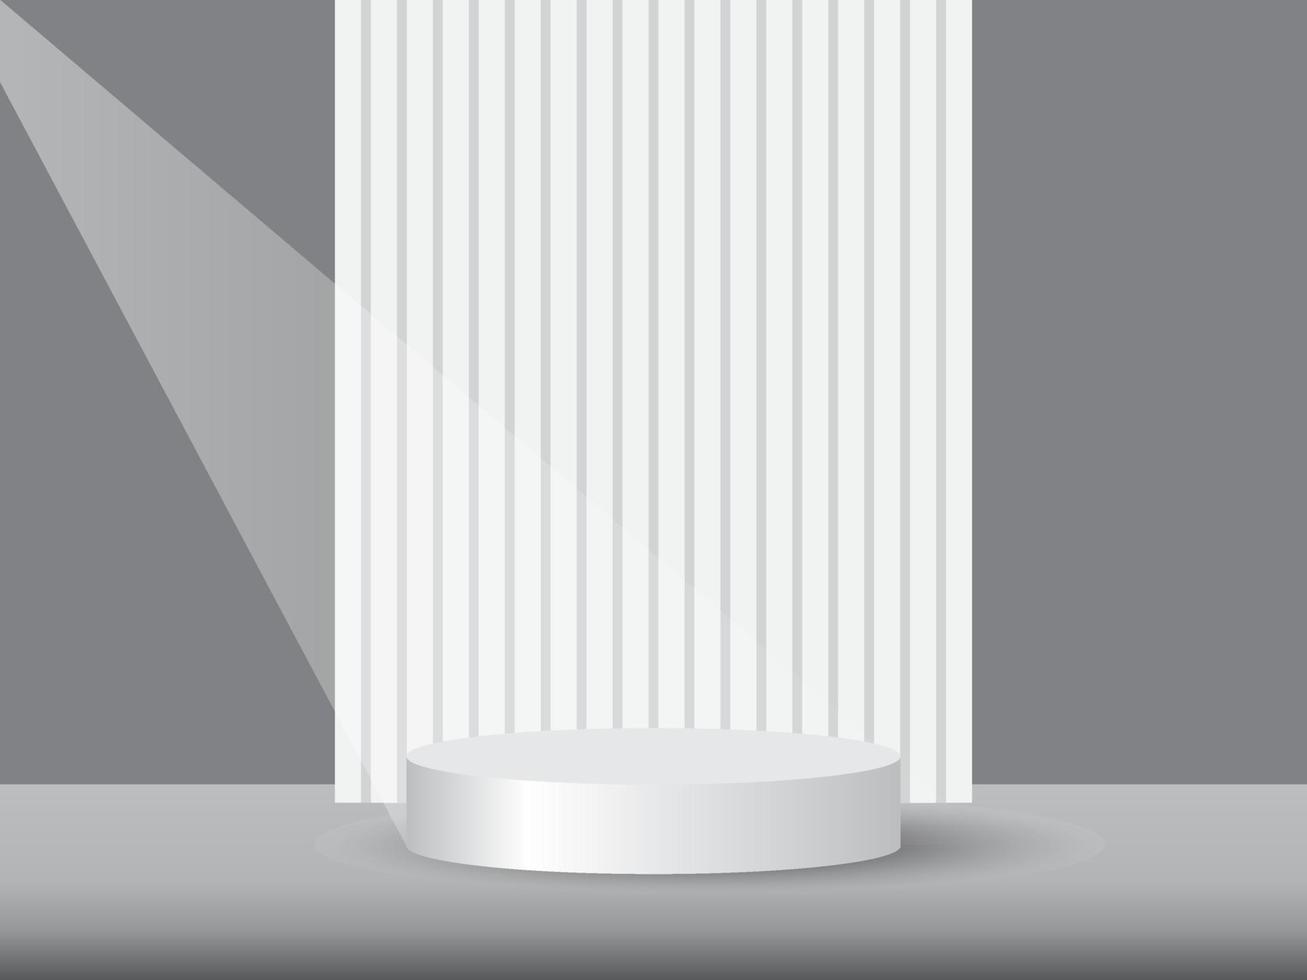 pódio de pedestal de cilindro 3d cinza e branco realista com fundo padrão vertical. cena mínima abstrata para produtos de maquete, vitrine de palco, exibição de promoção. vetor geométrico